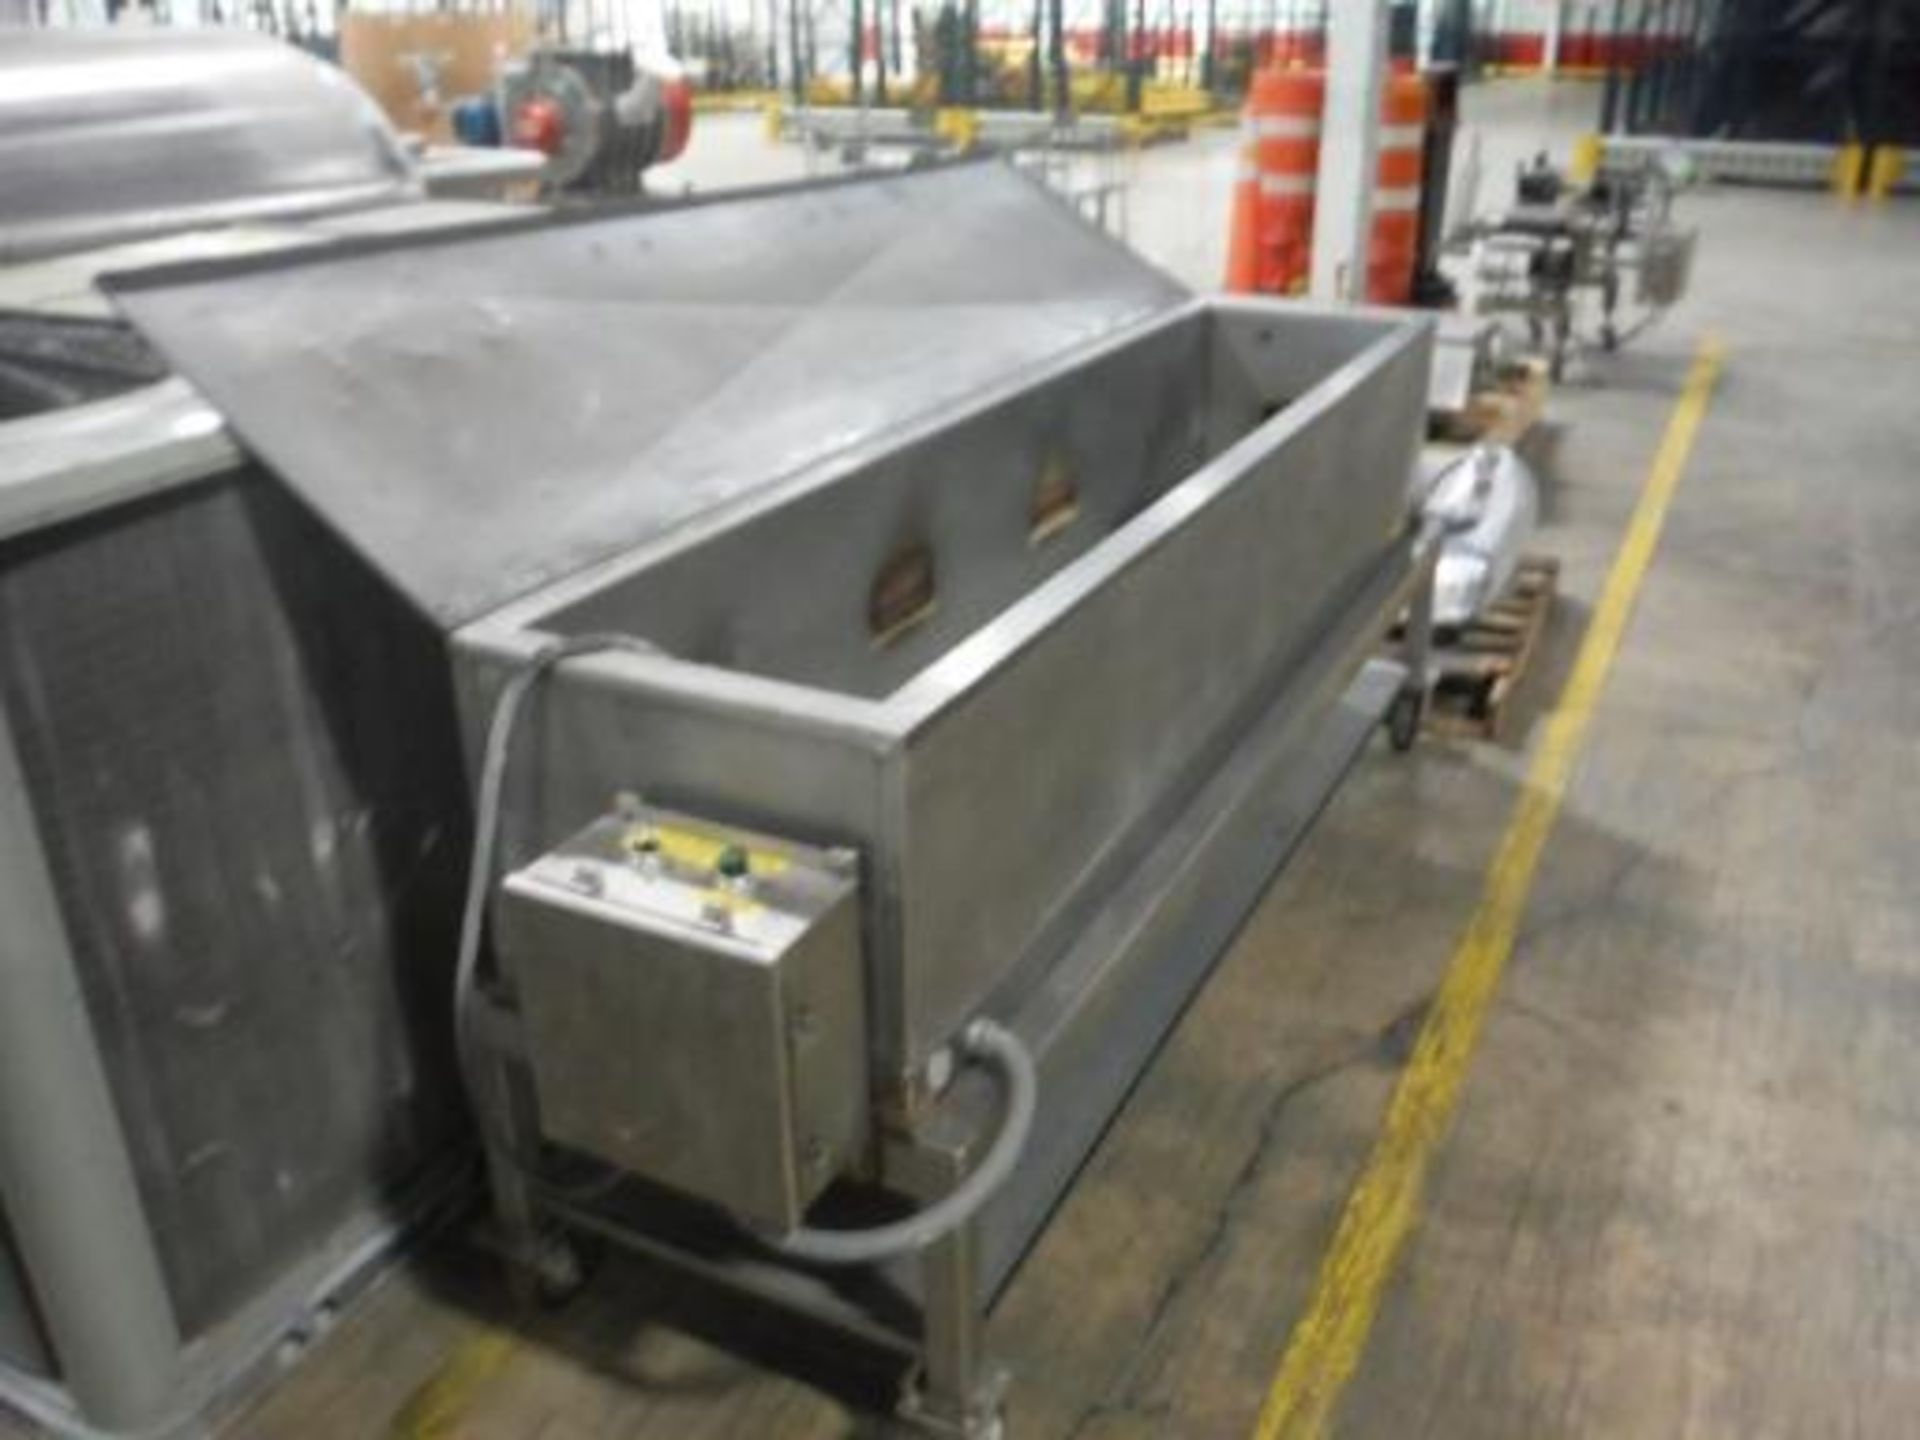 Clean-A-Lox SS heat tank on casters, Model: PS 94 1155 1, Model: US 94 0373 1, S/N: 90, 90 in x 18